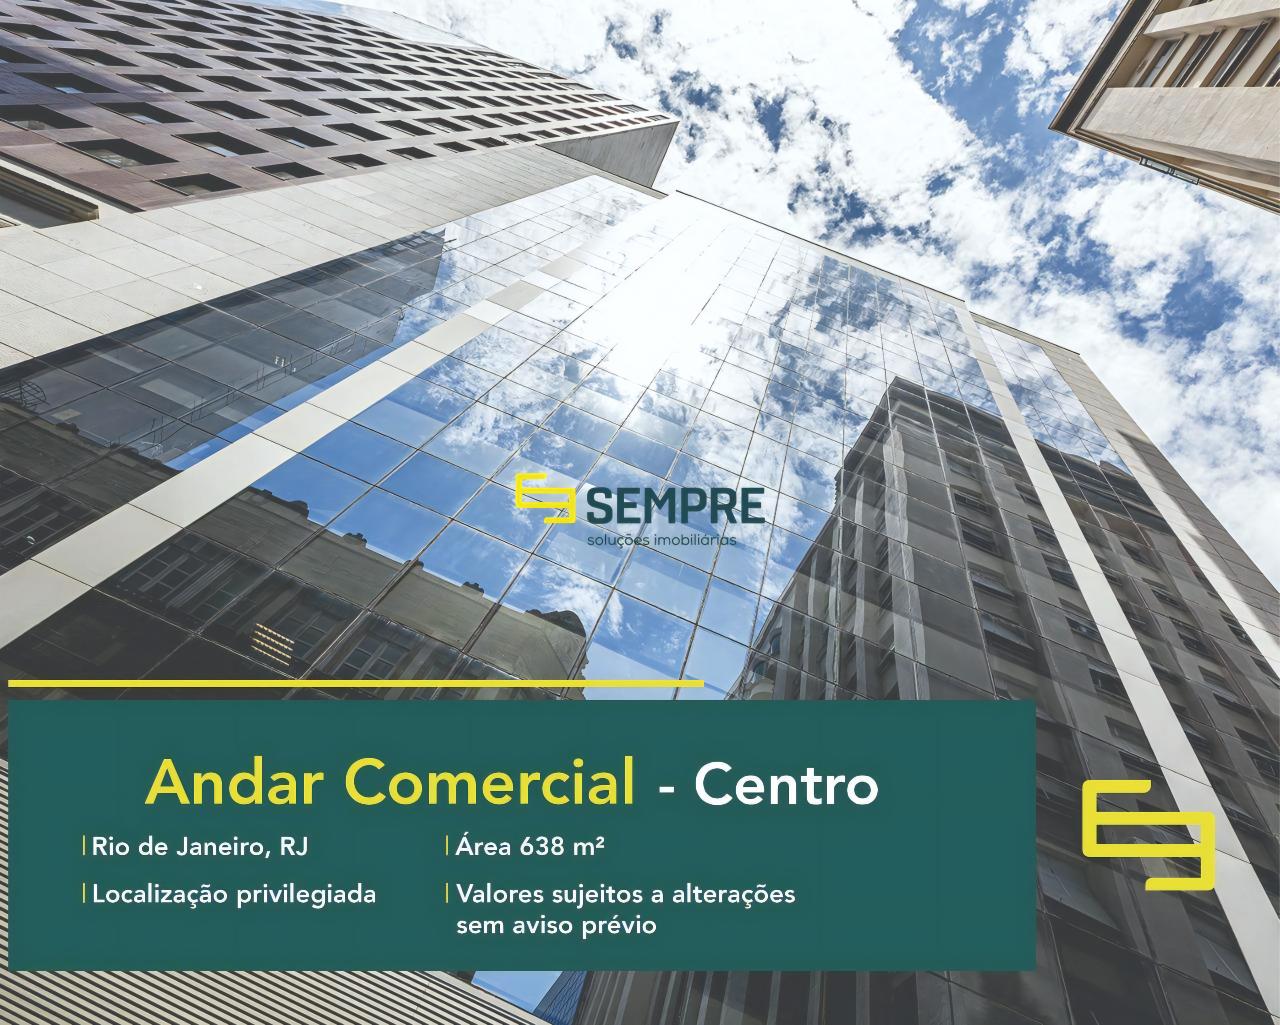 Andar corrido no Rio de Janeiro para locação - Centro, em excelente localização. O estabelecimento comercial conta com área de 638,15 m².